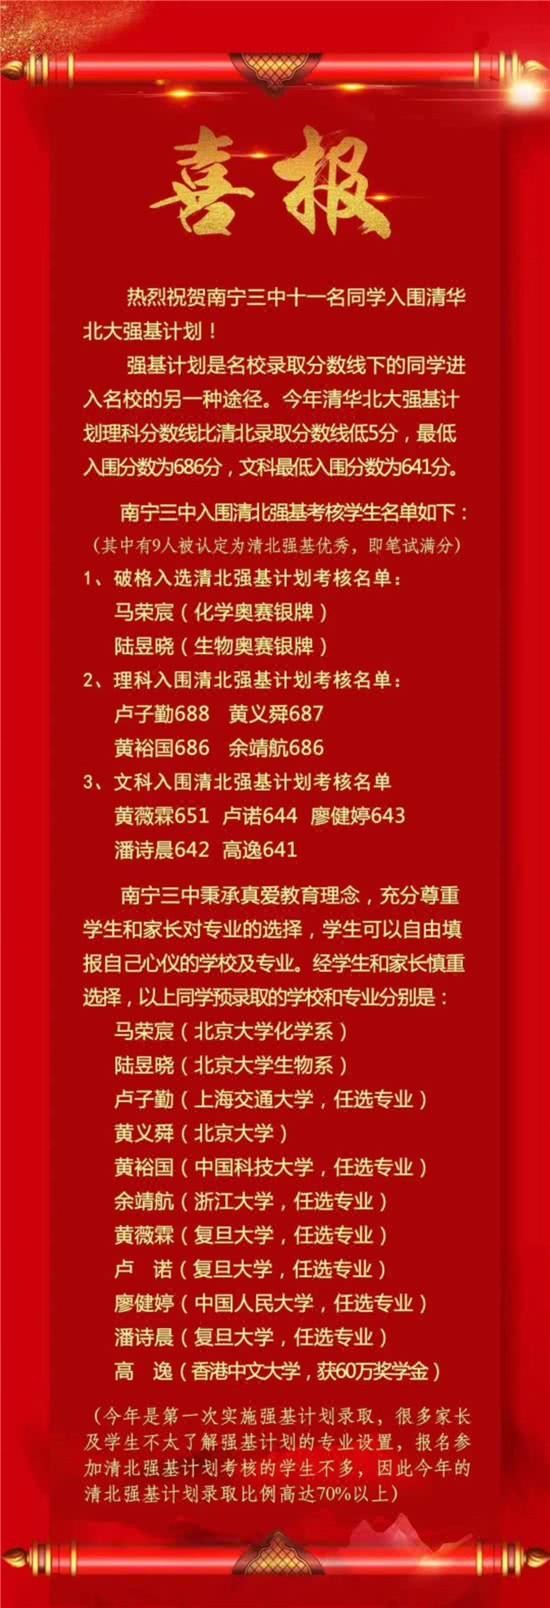 好消息!今年广西175名学生被清华北大录取 比原计划多招生38人!